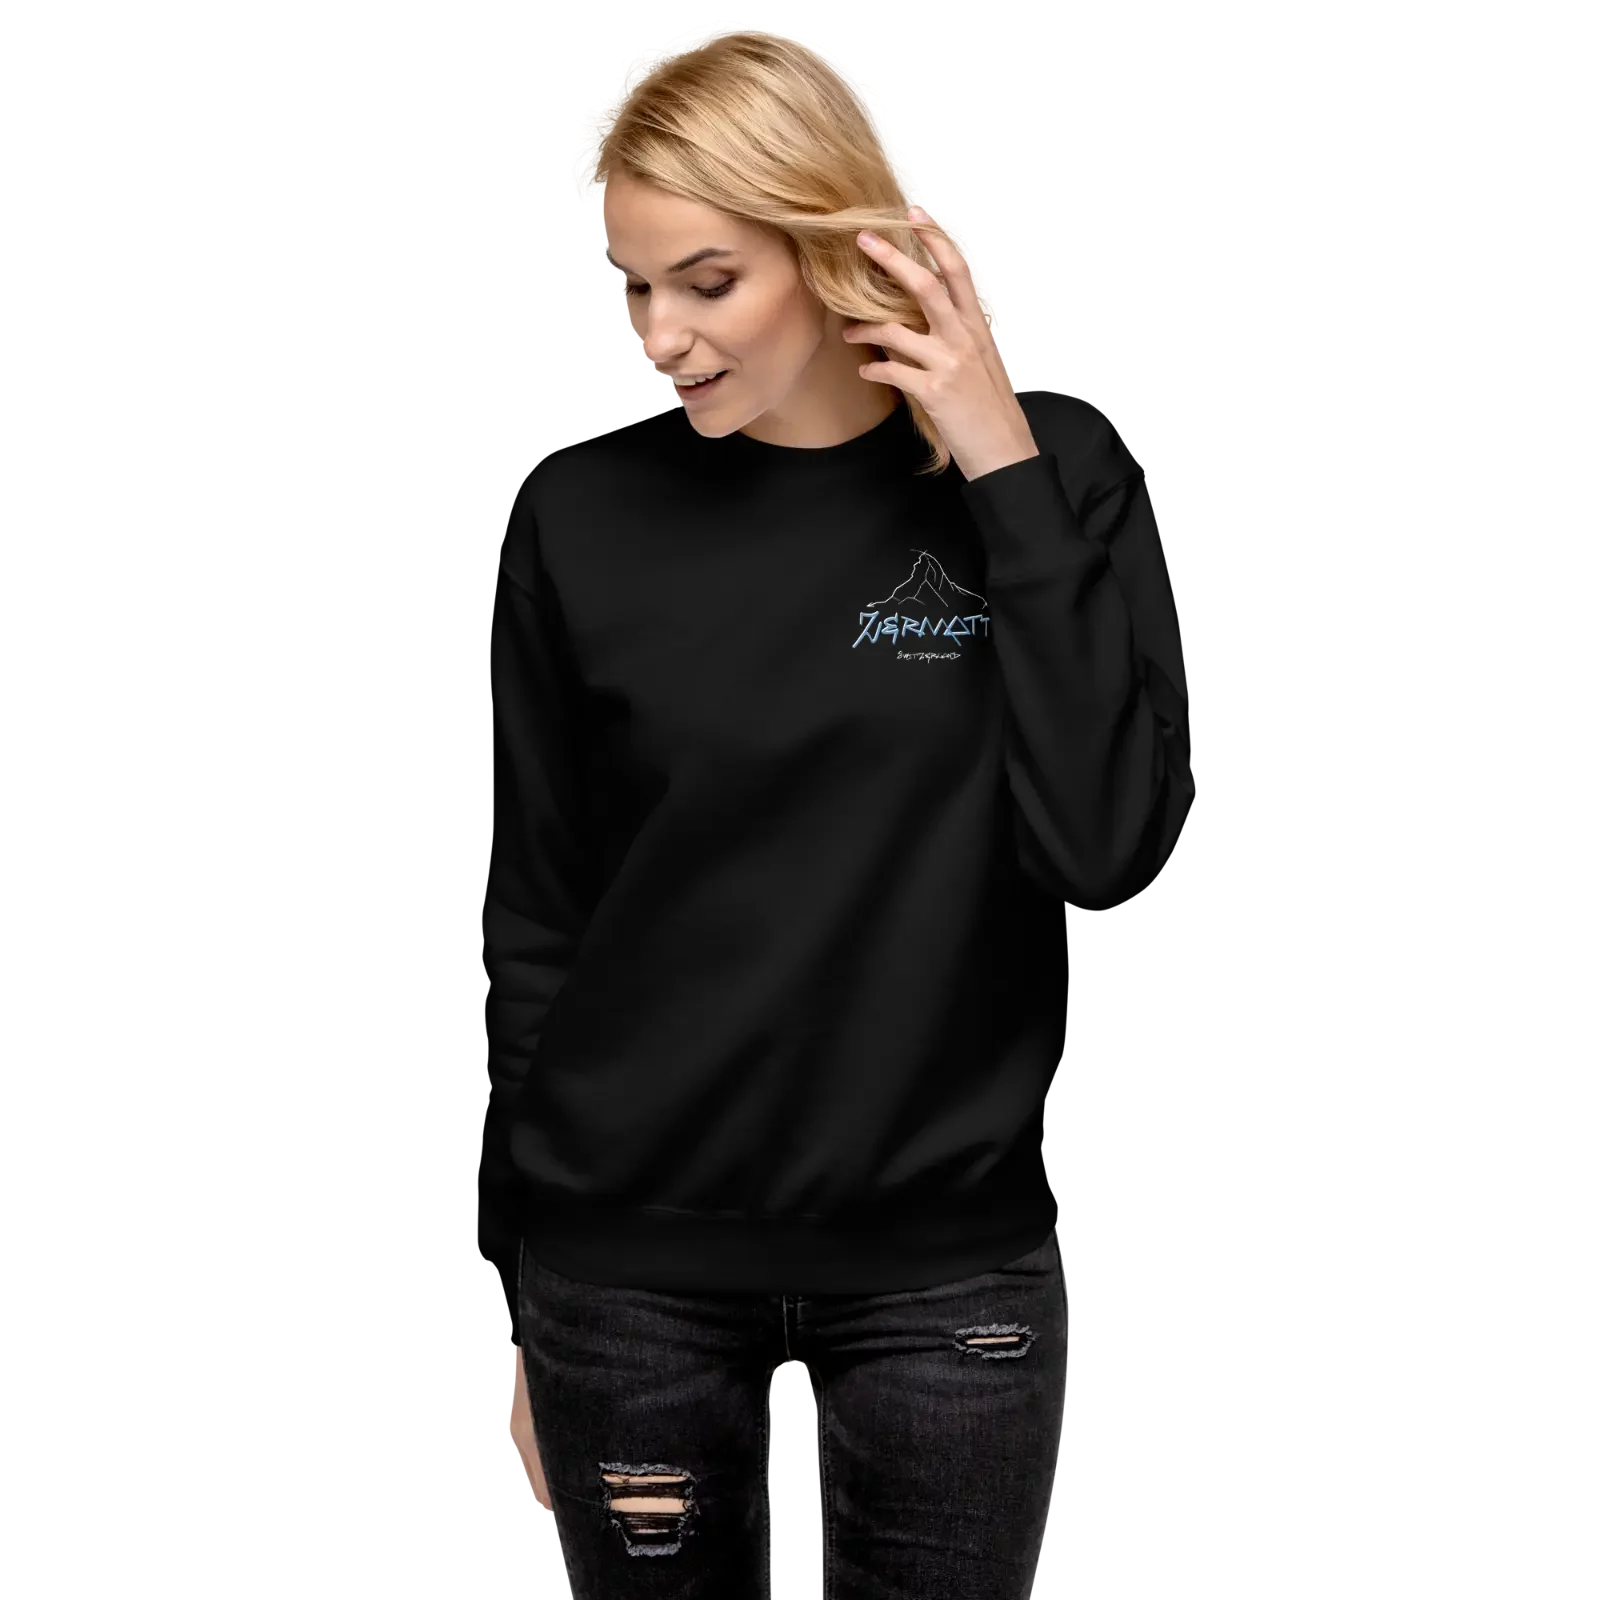 unisex-premium-sweatshirt-black-front-656721aba383c